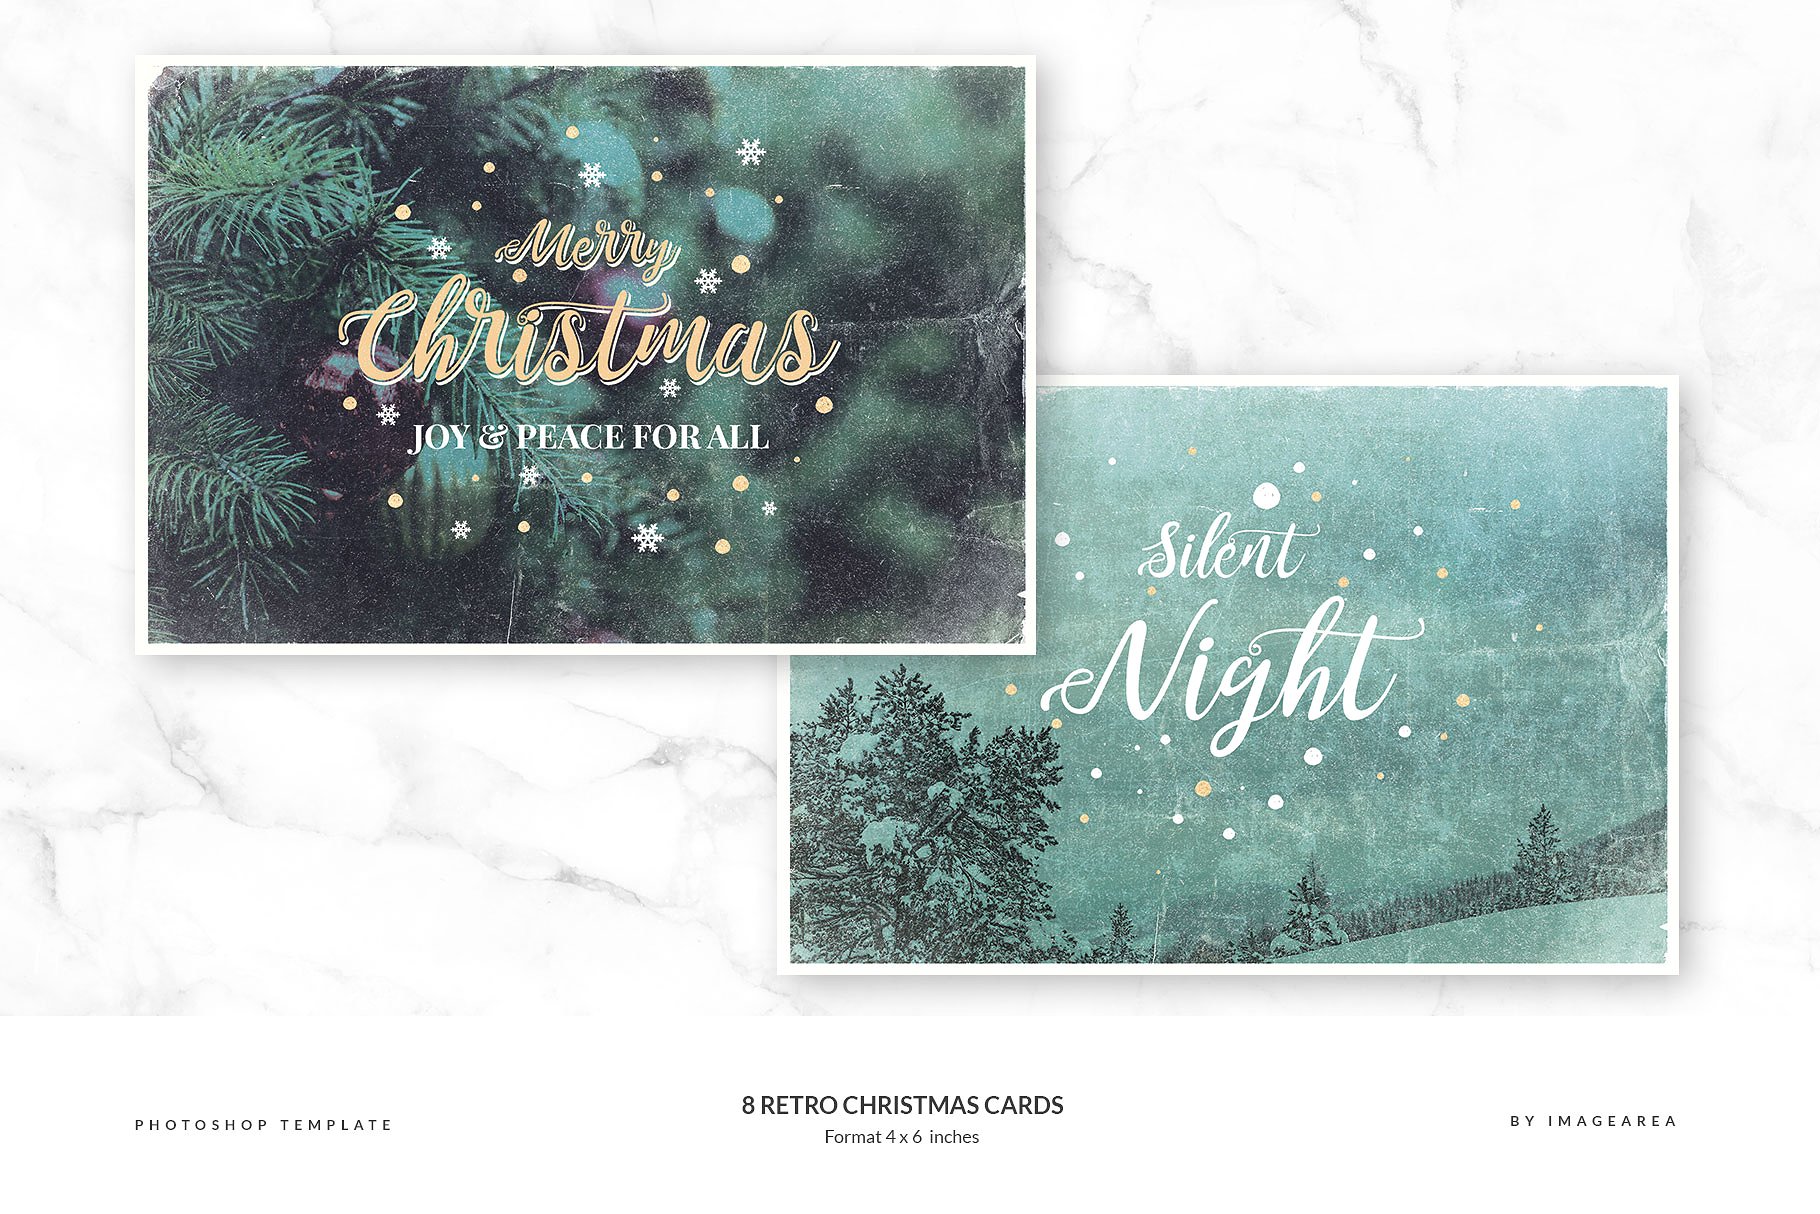 复古风圣诞节贺卡模板 Retro Christmas Cards插图(2)